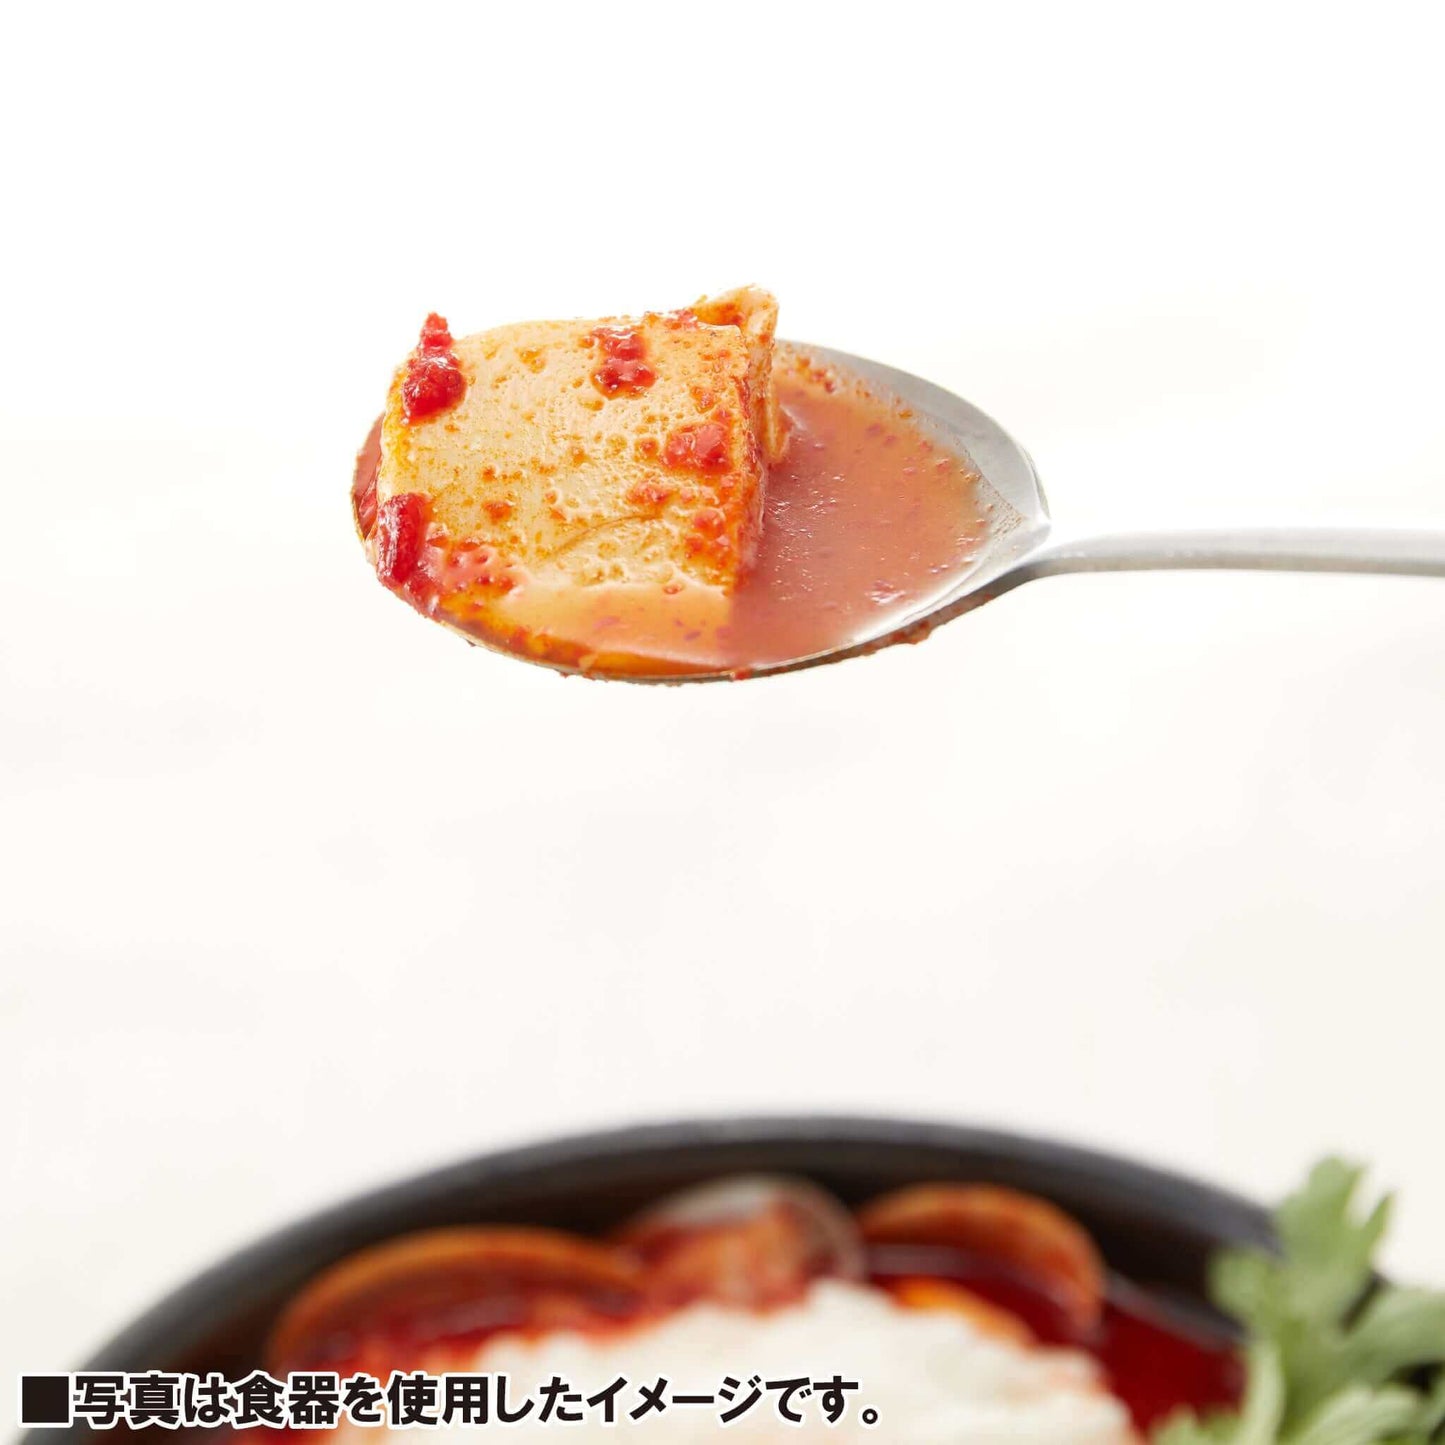 真空スプーン10個セット - 韓国惣菜bibim'ネットストア